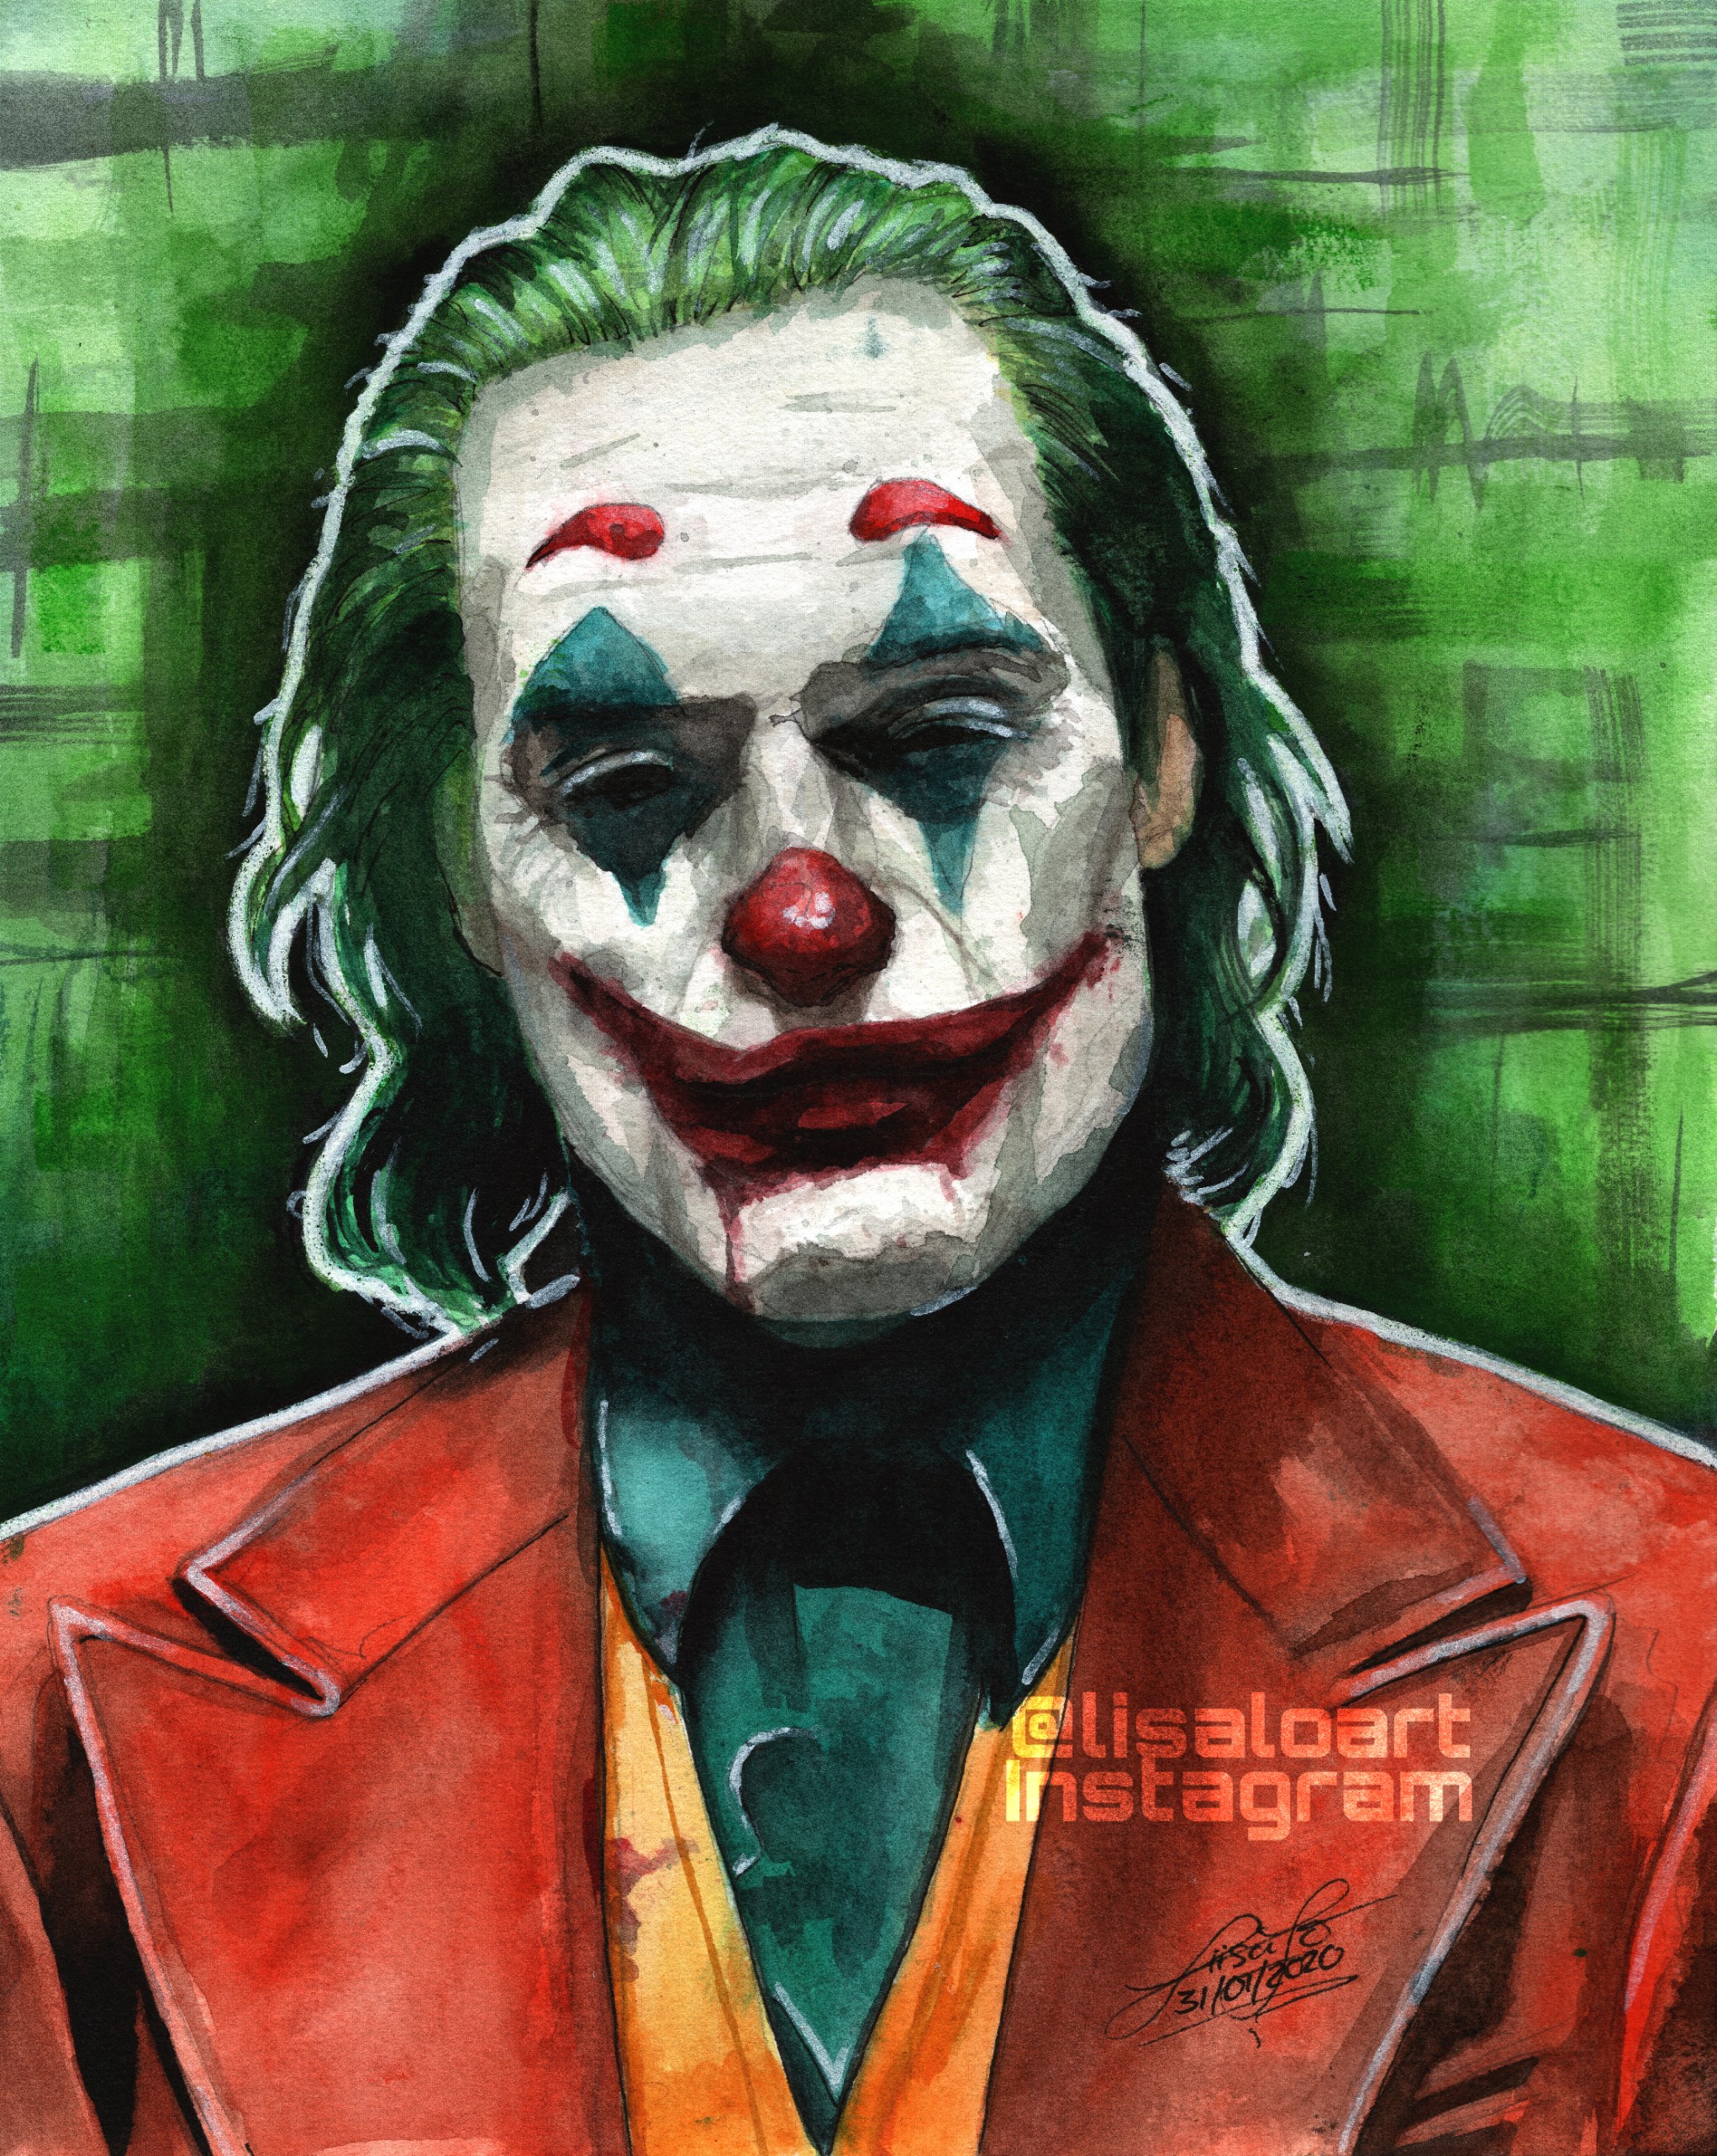 Joker // Joaquin Phoenix // @LISALOART by liisalo on DeviantArt